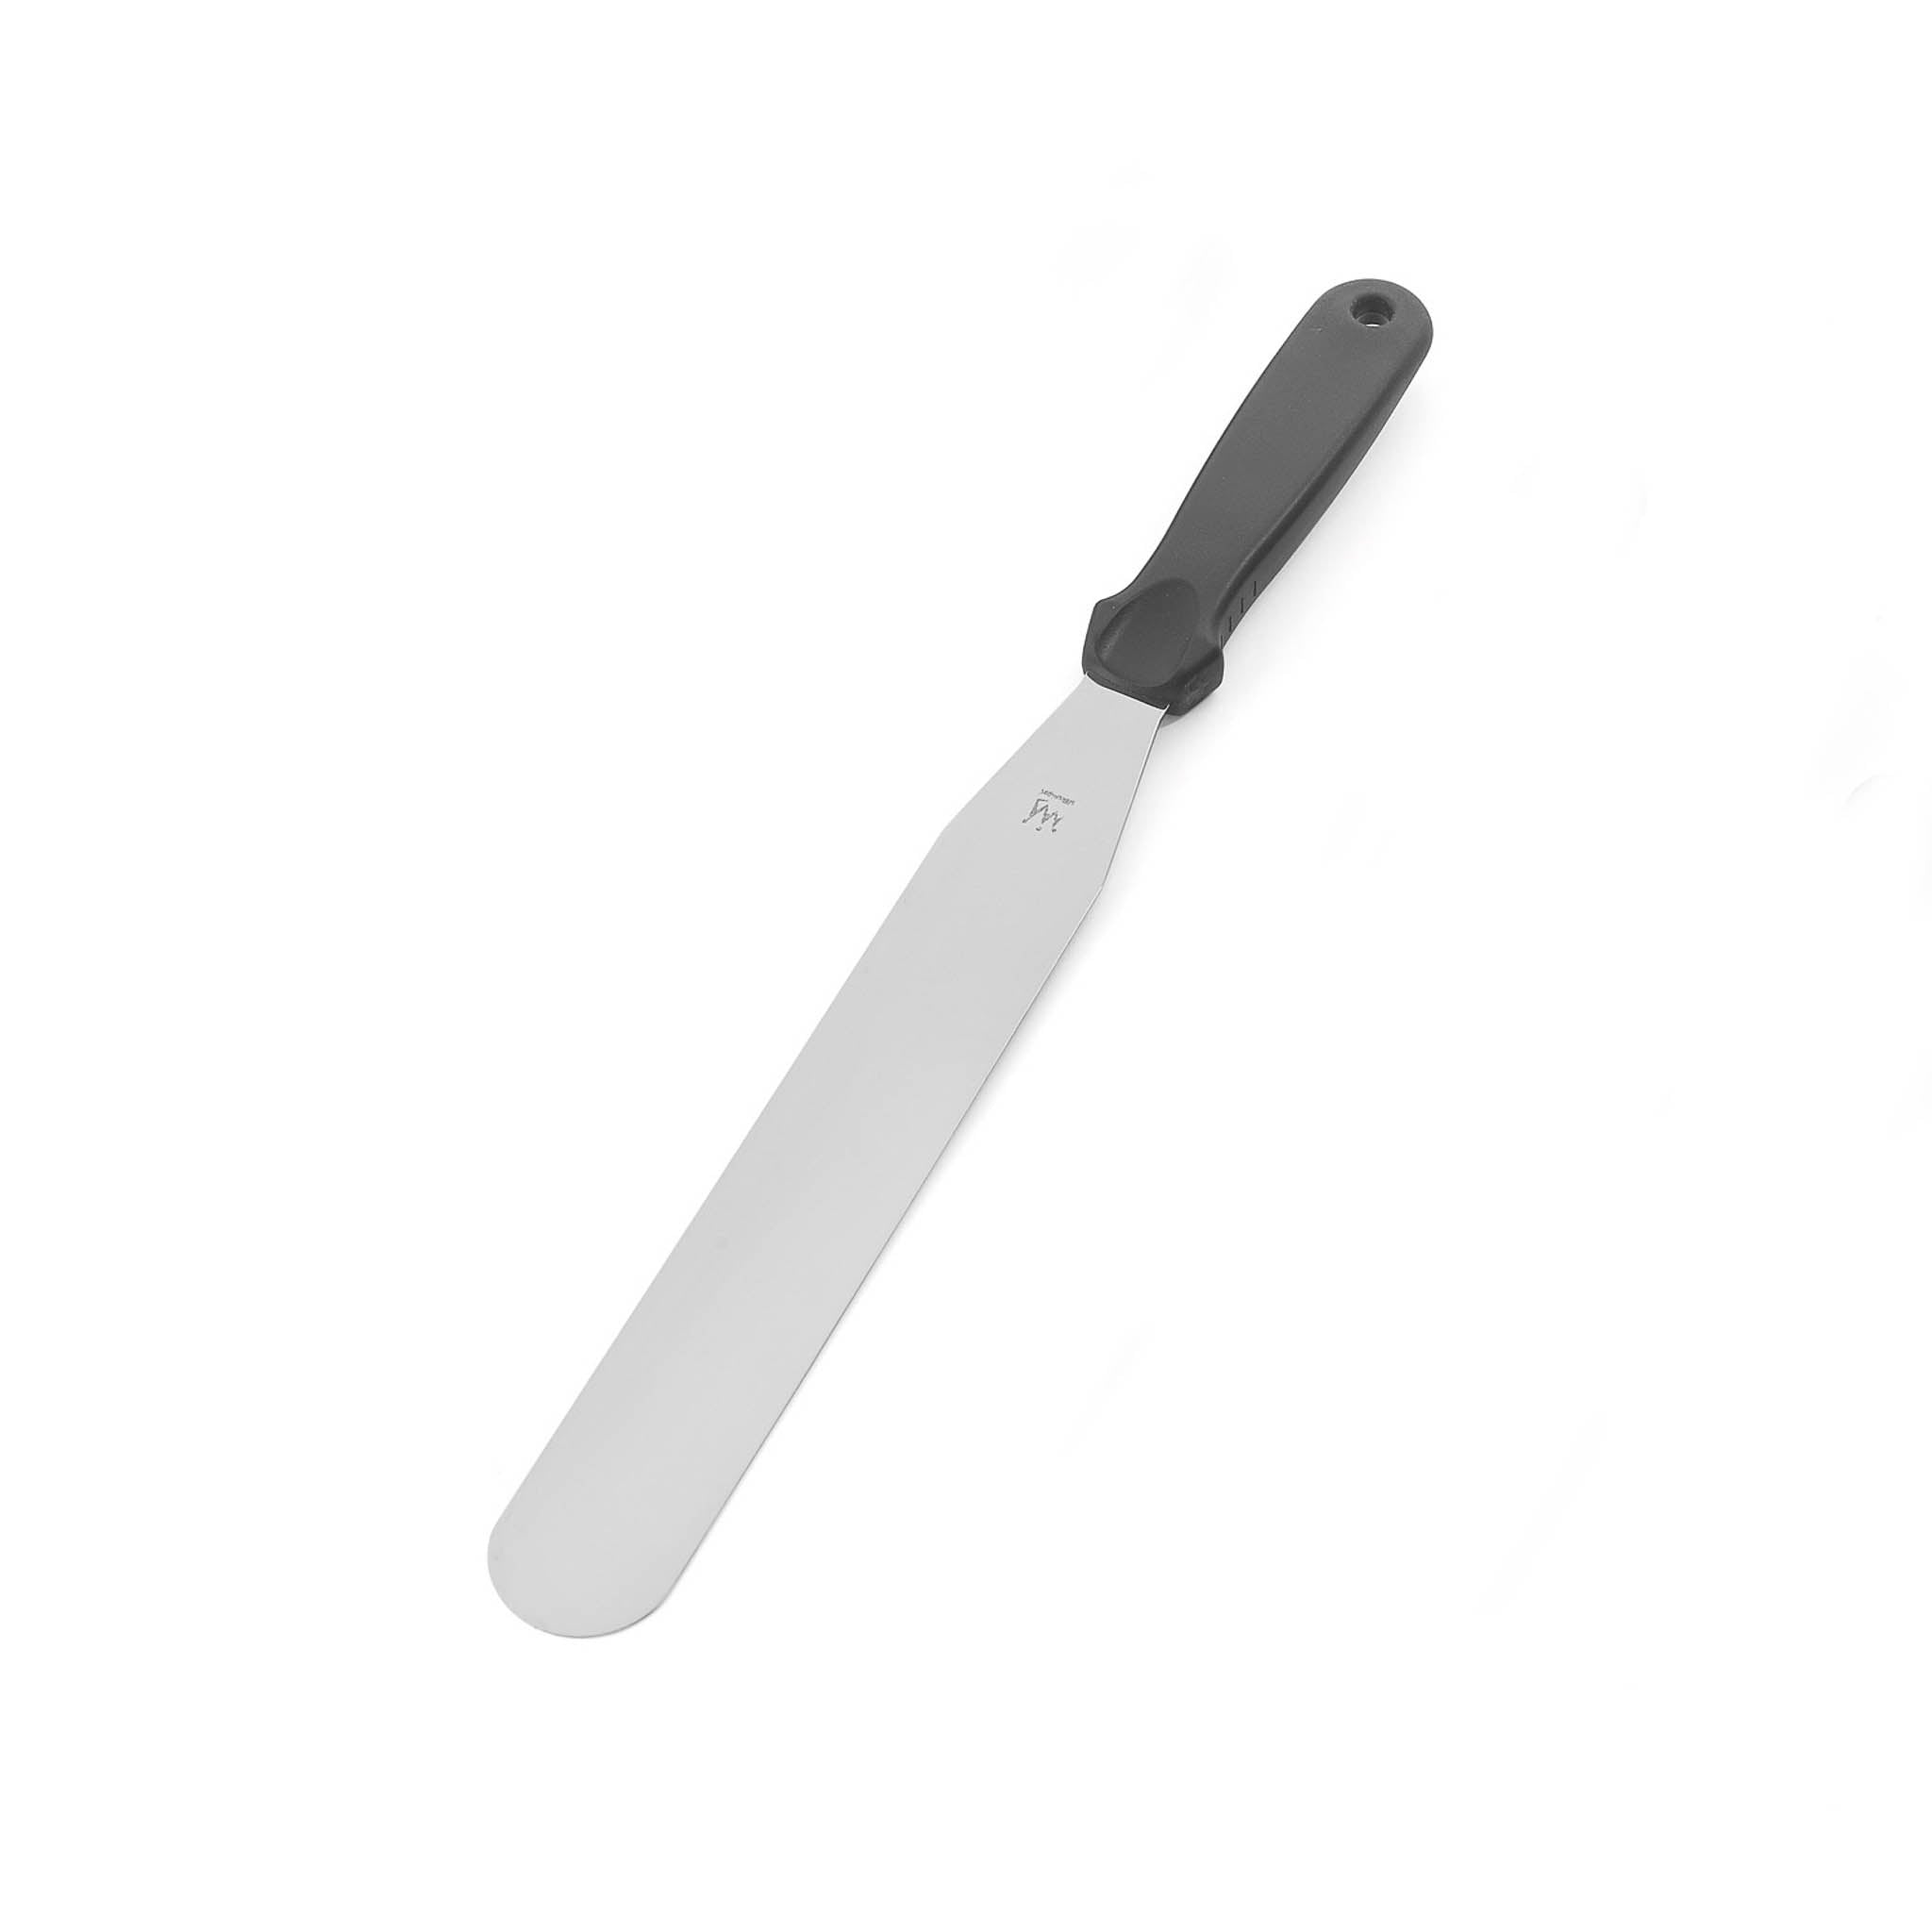 Silikomart Palette Knife 38cm